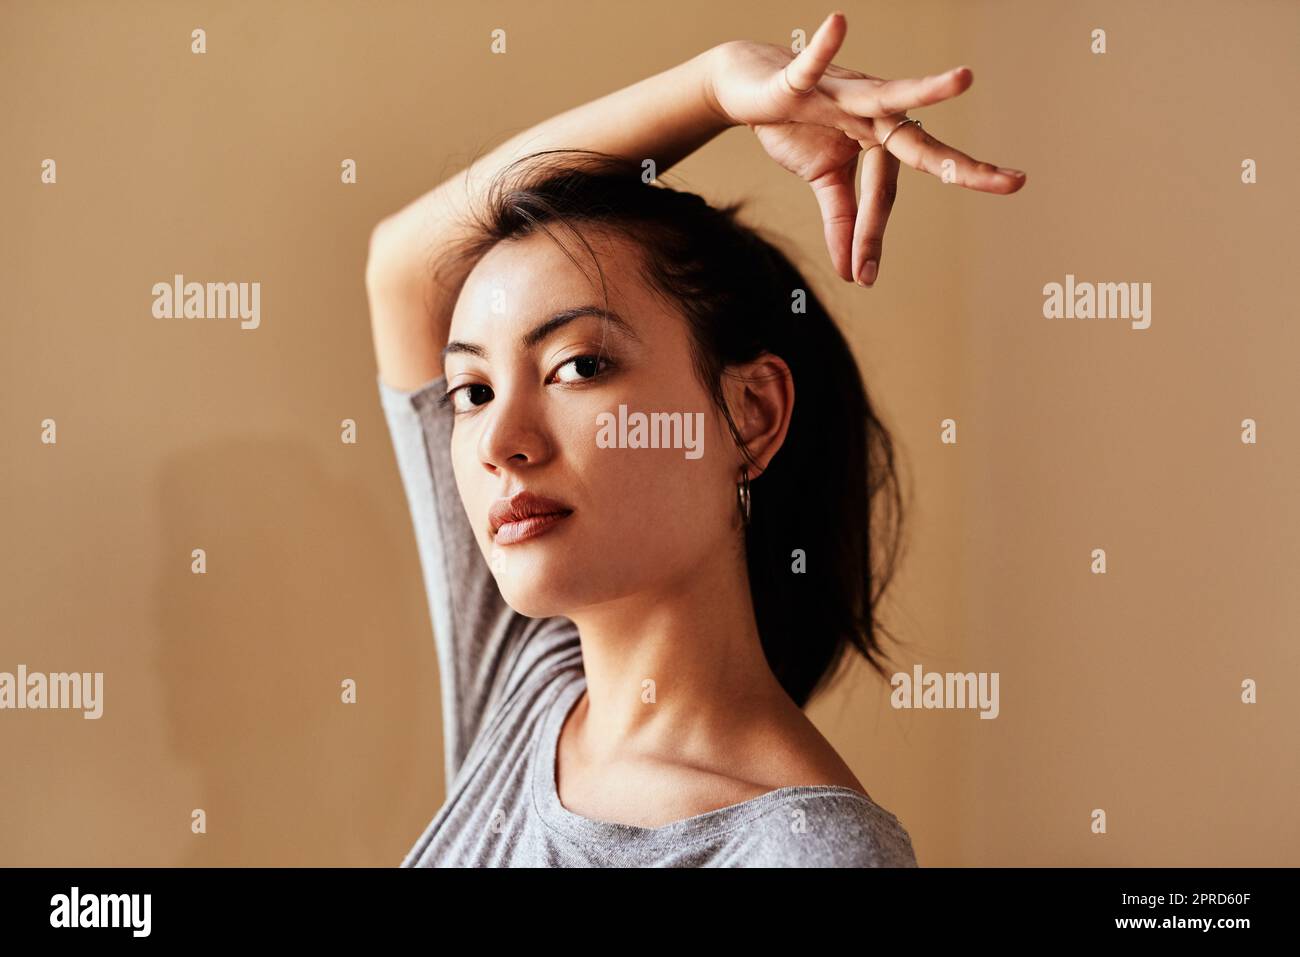 Nama-Slay. Porträt einer jungen Frau, die während einer Yoga-Sitzung eine Handbewegung macht. Stockfoto